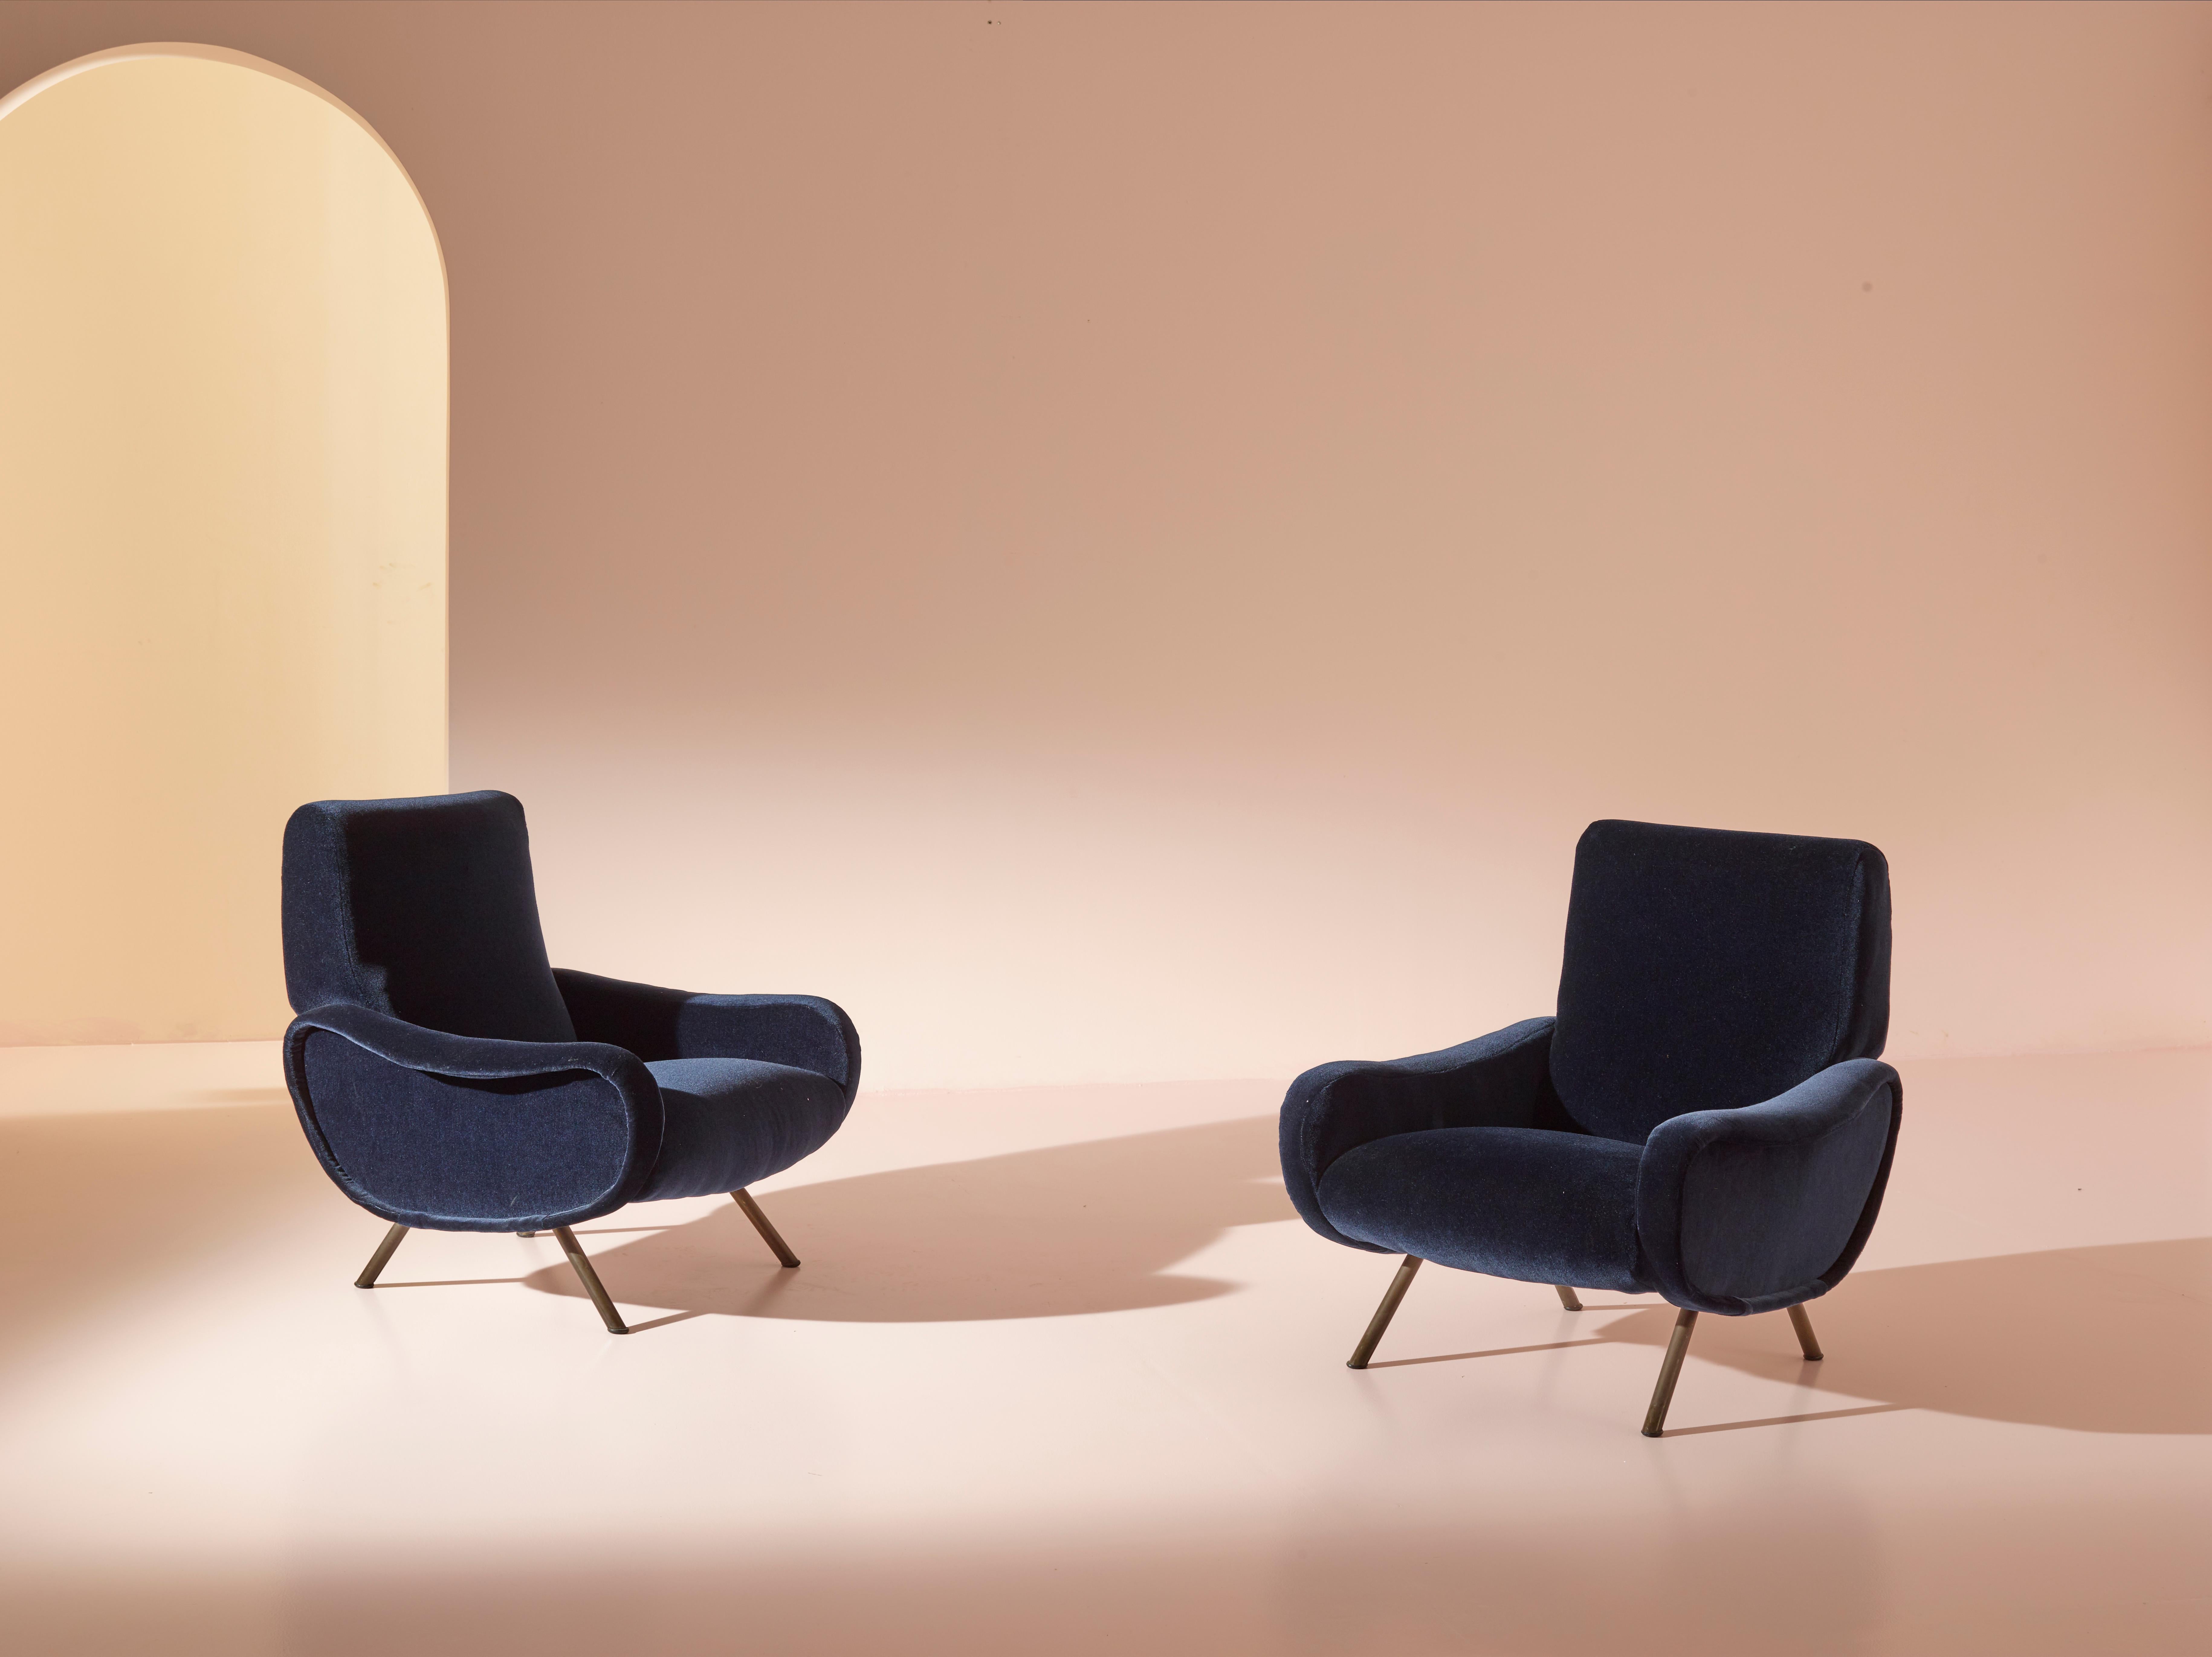 Une paire exquise de chaises longues Lady, conçues à l'origine par le célèbre Marco Zanuso pour Arflex, Italie, en 1951. Ces chaises remarquables ont fait l'objet d'un re-tapissage méticuleux et sont désormais recouvertes d'un élégant tissu de